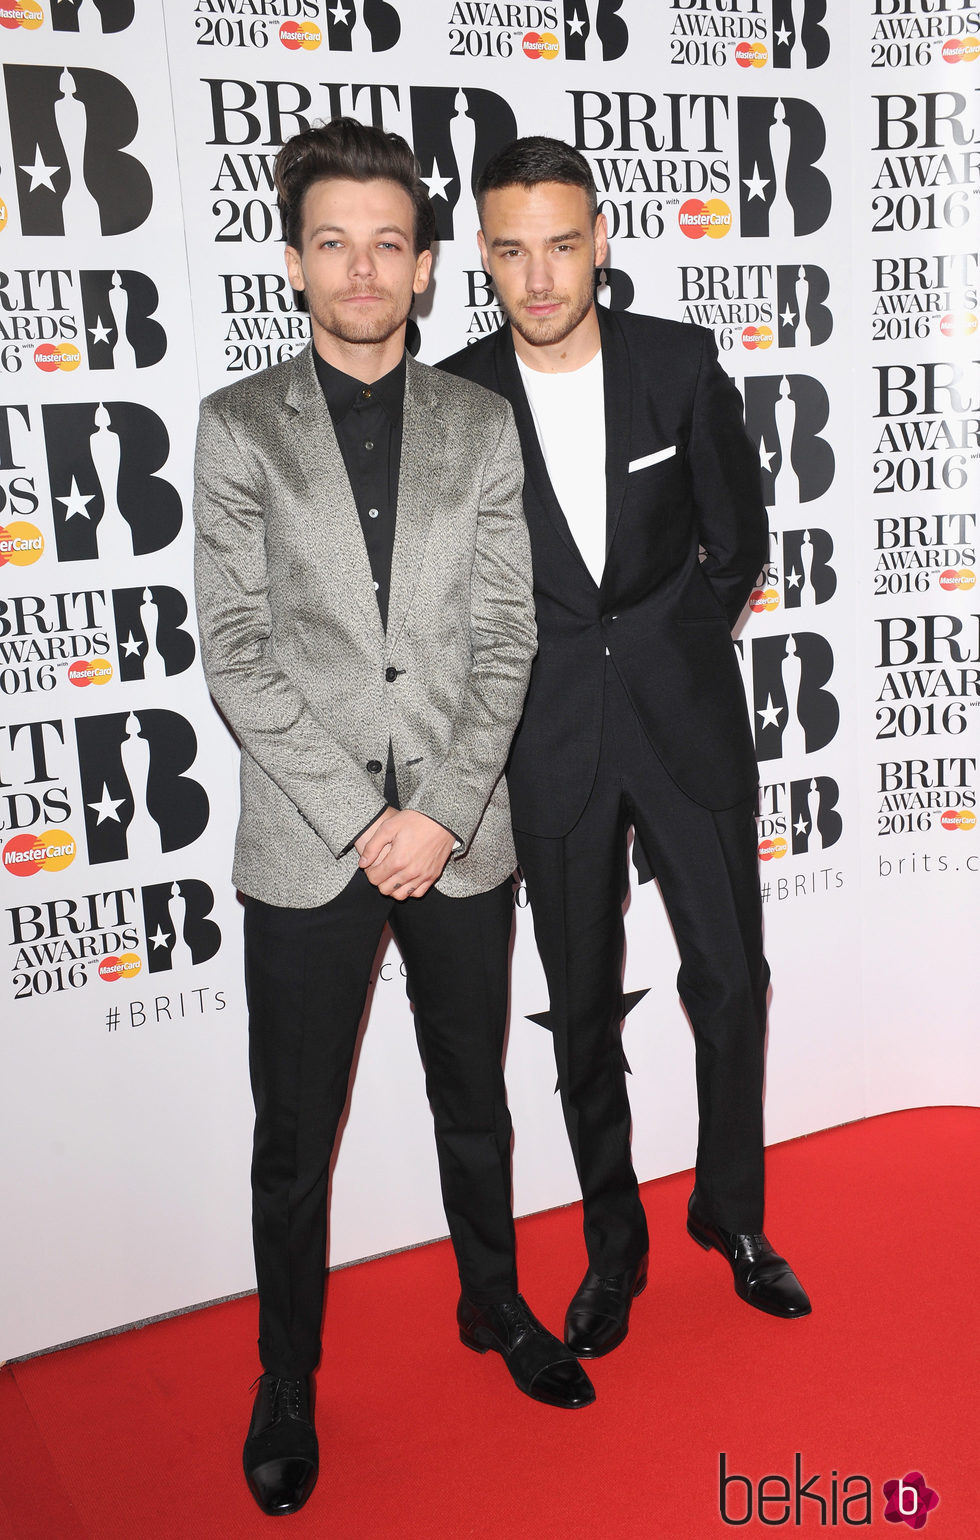 Louis Tomlinson y Liam Payne en la alfombra roja de los Premios Brit 2016